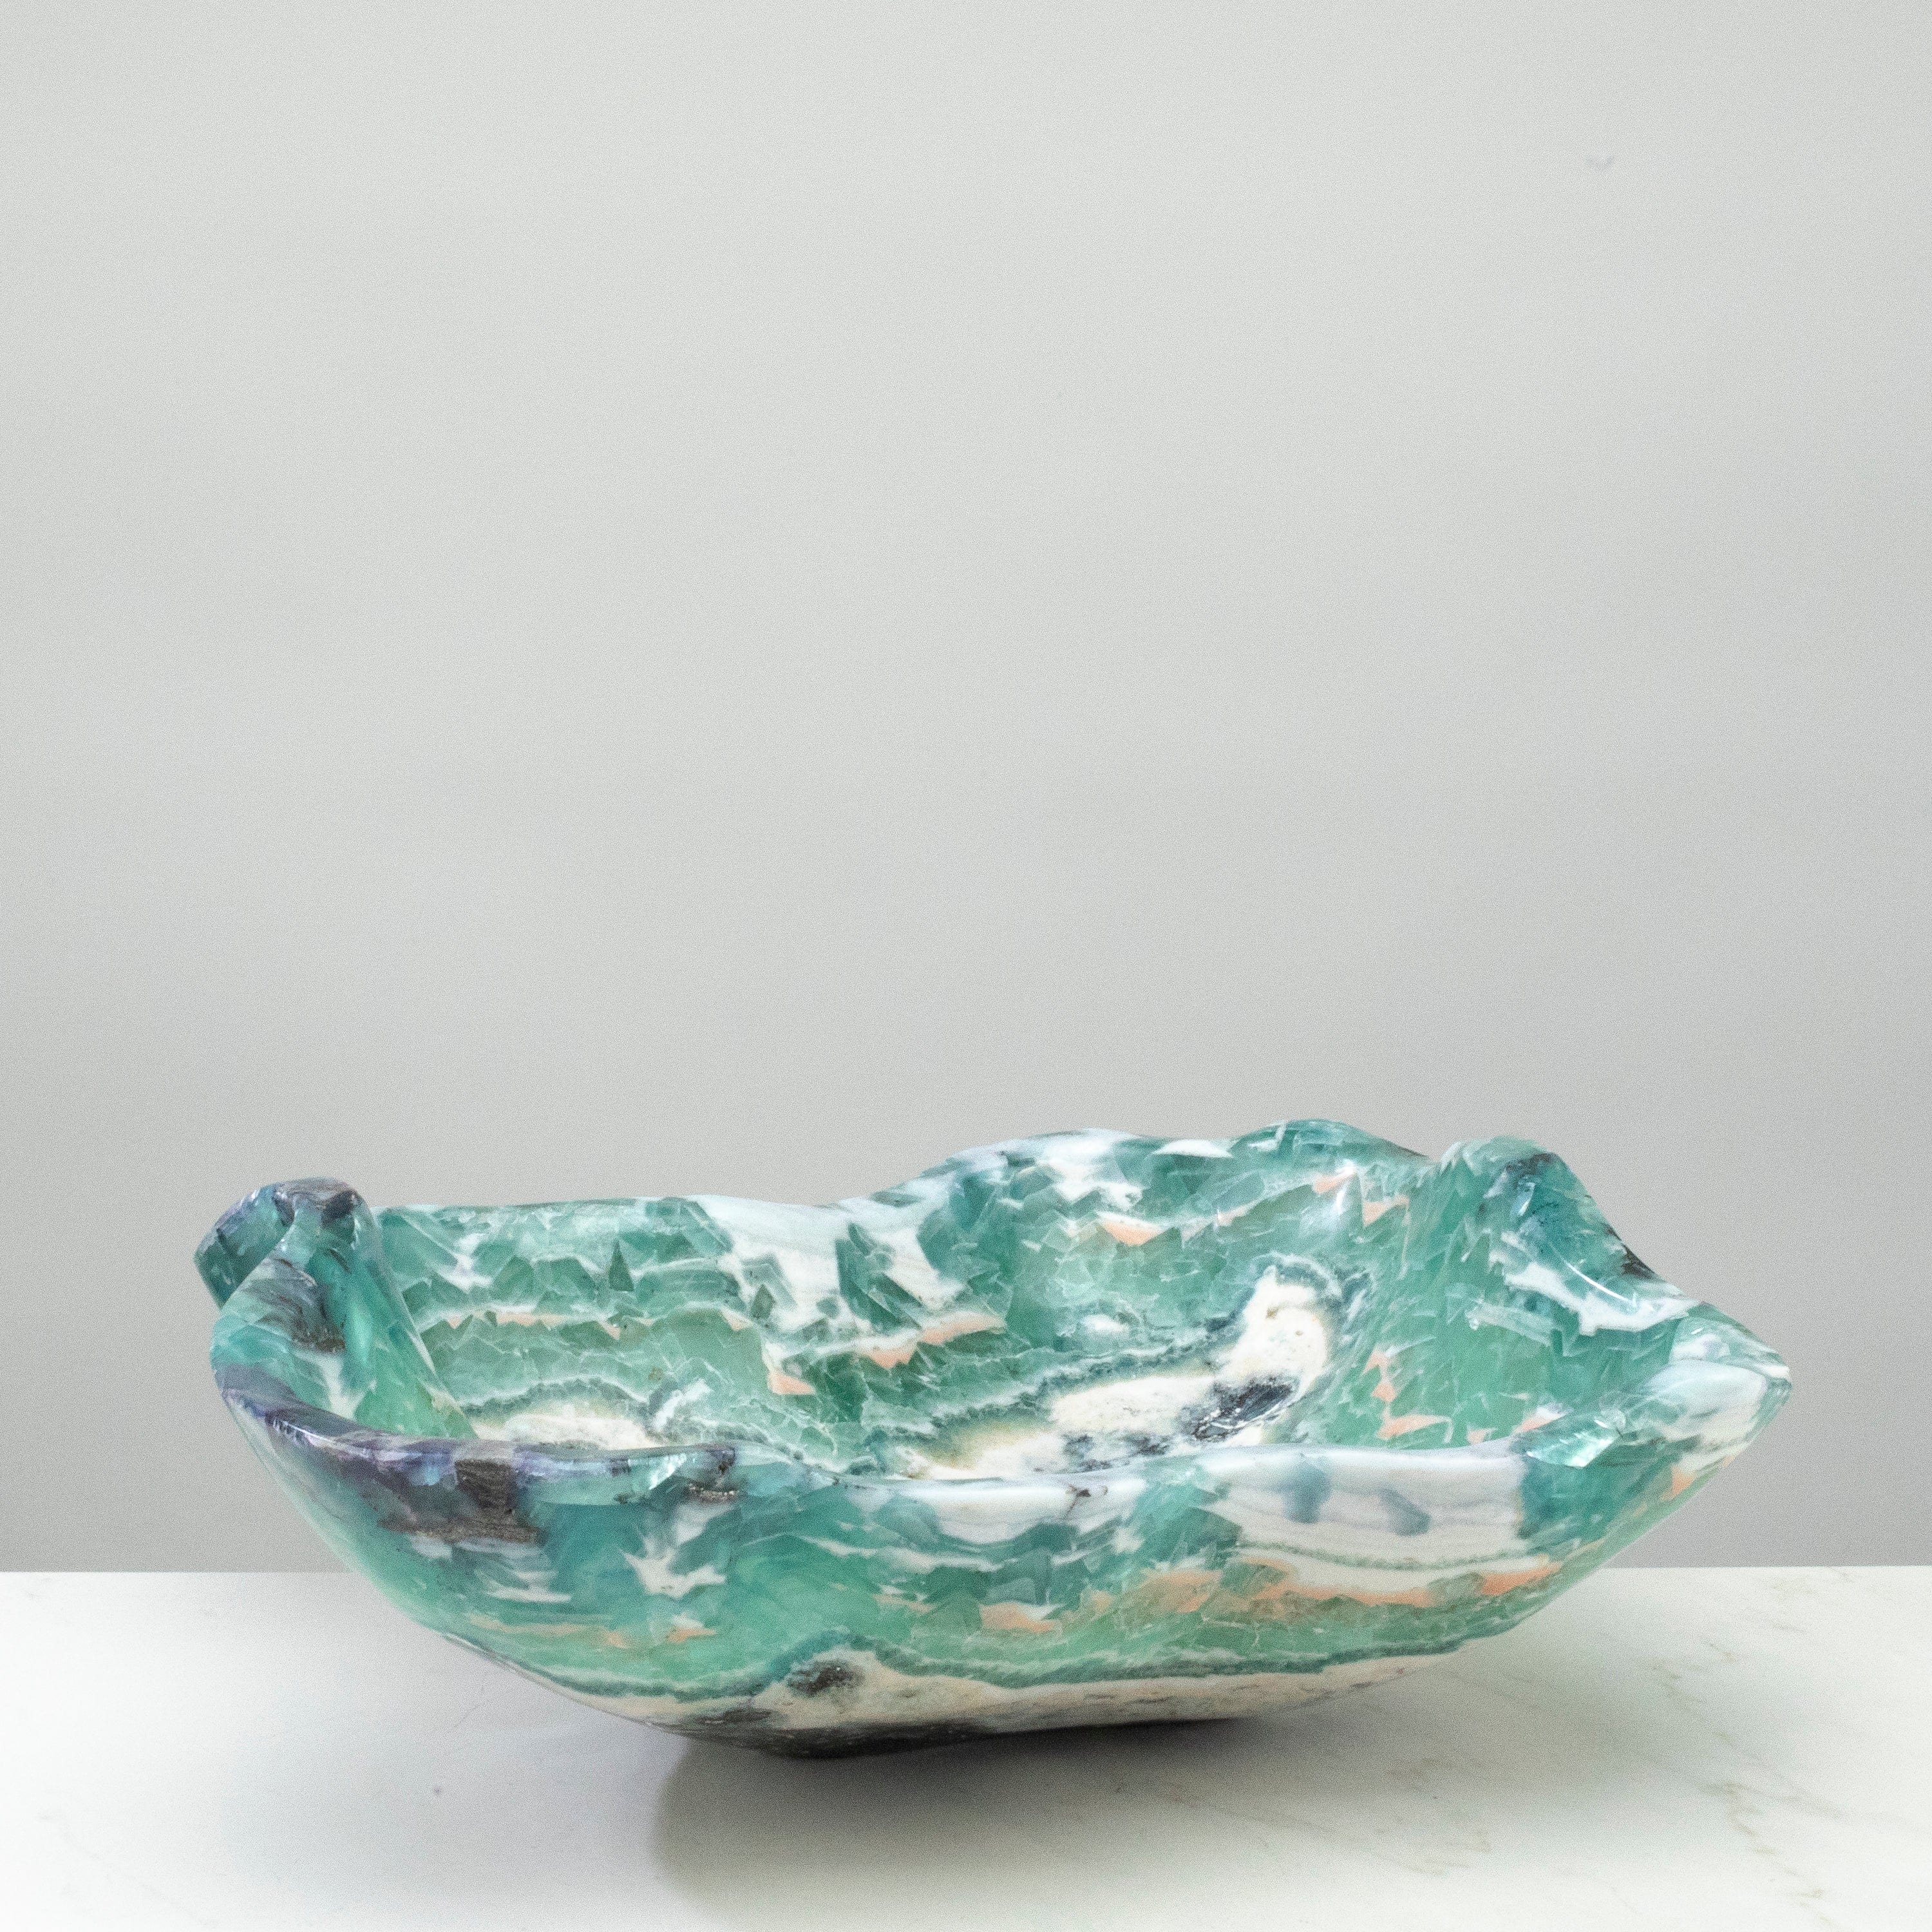 KALIFANO Gemstone Bowls Natural Blue / Green Fluorite Bowl 16" BFL8000.003